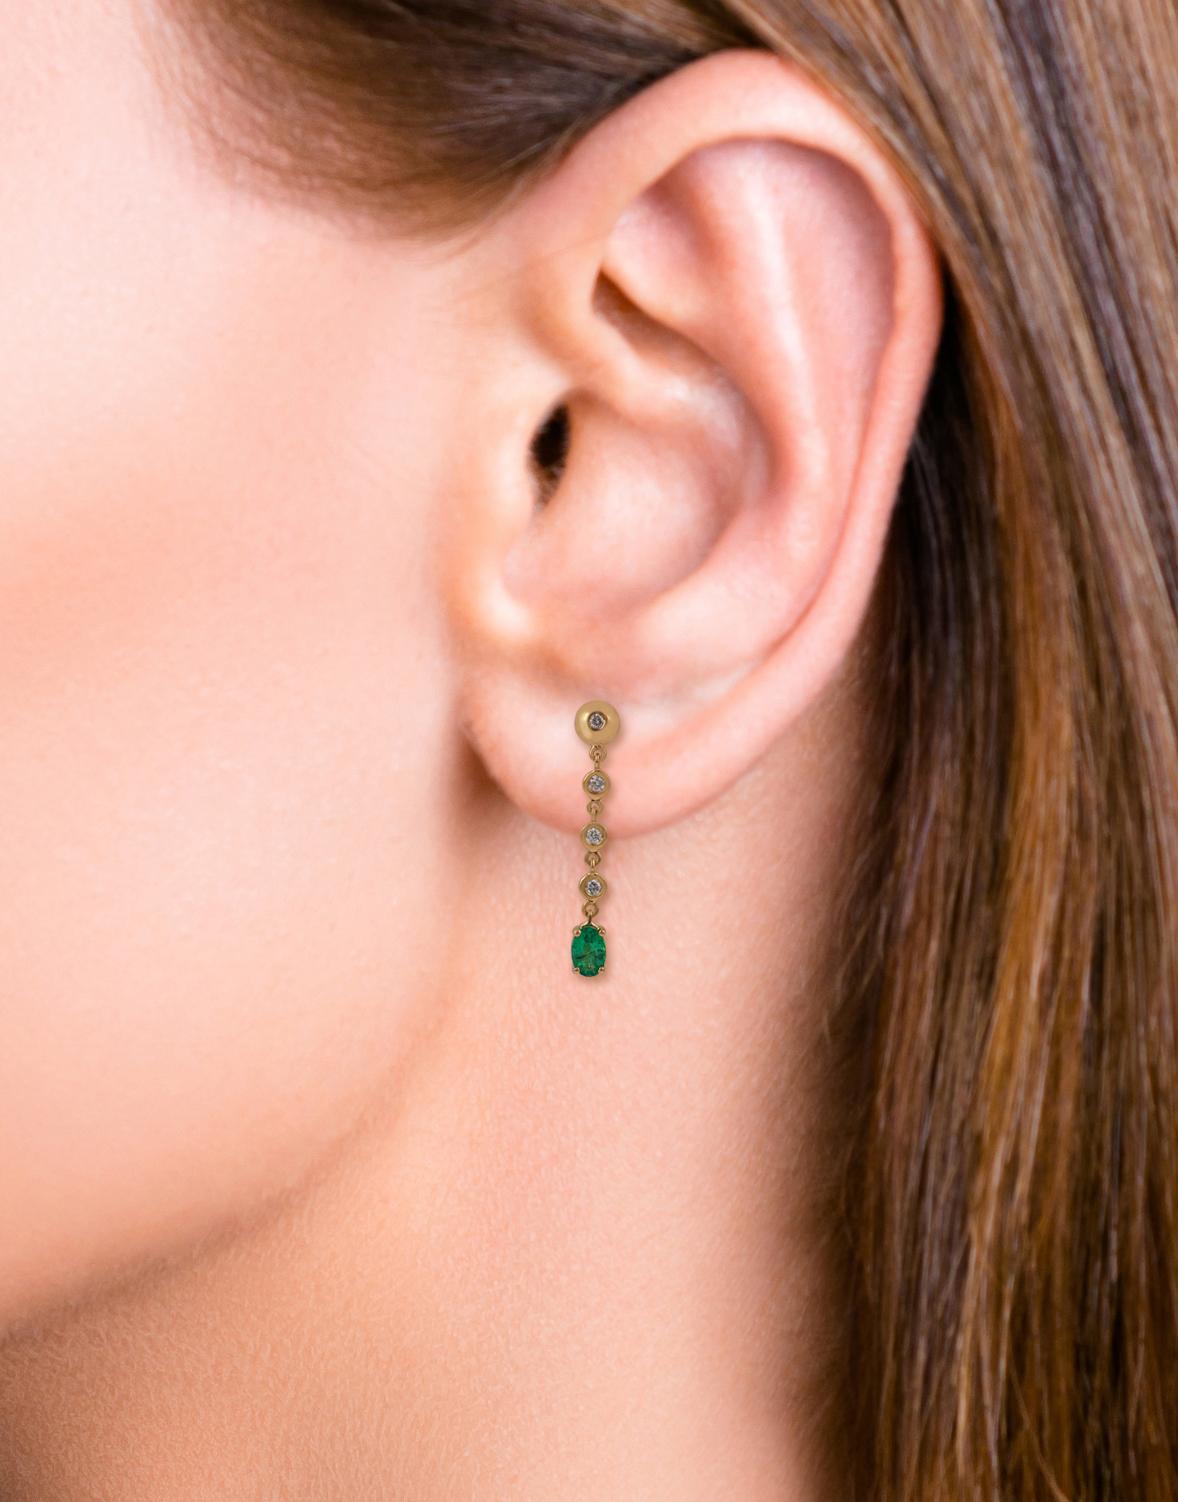 Oval Cut 0.95 Carat Zambian Emerald & Diamond Earrings in 18k Gold For Sale